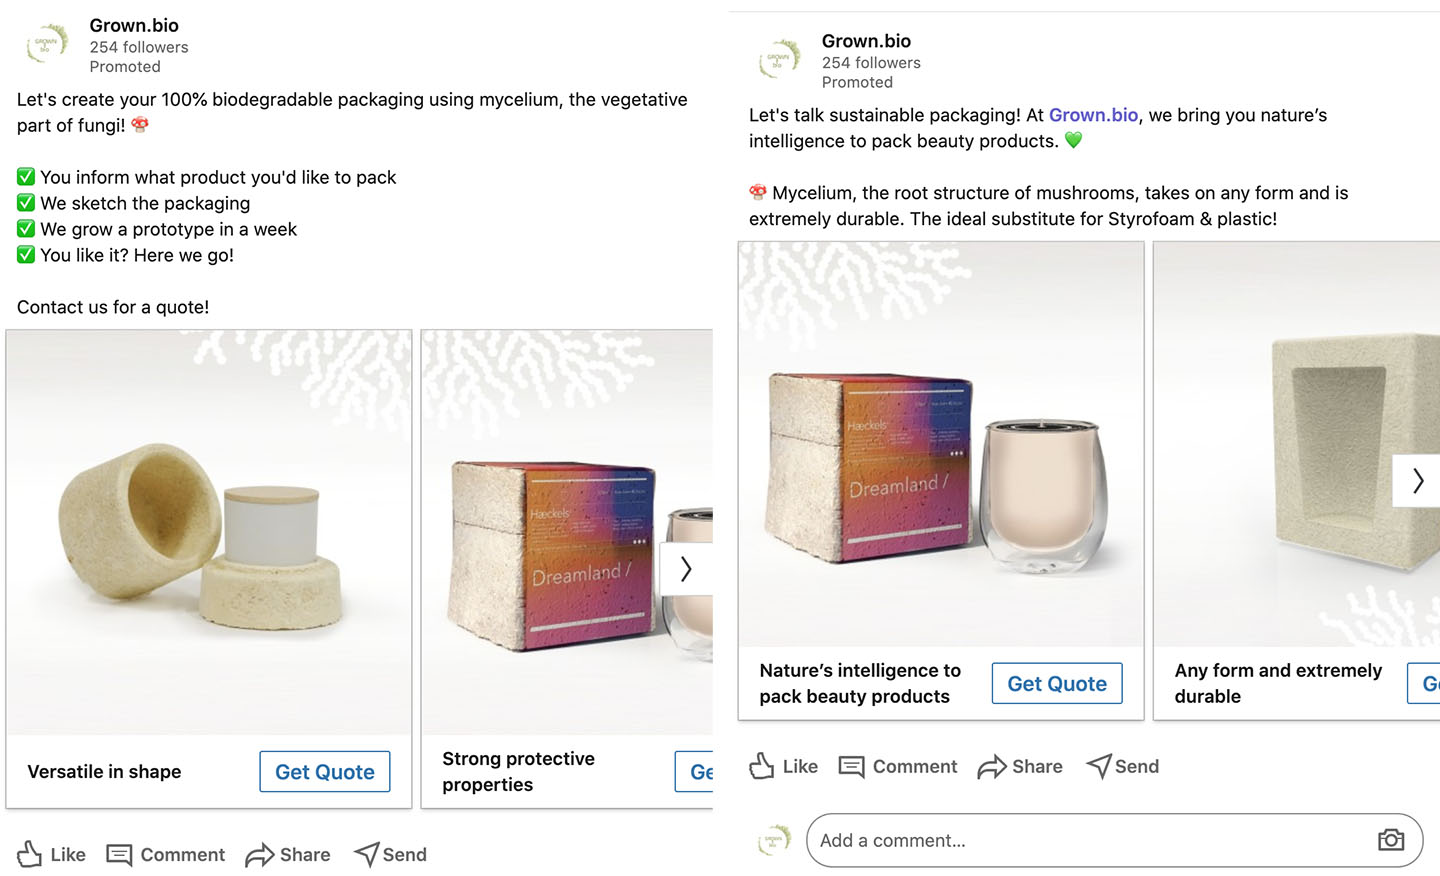 LinkedIn Ads gemaakt voor Grown.bio waarin twee van de duurzame verpakkingsproducten van het bedrijf worden getoond.